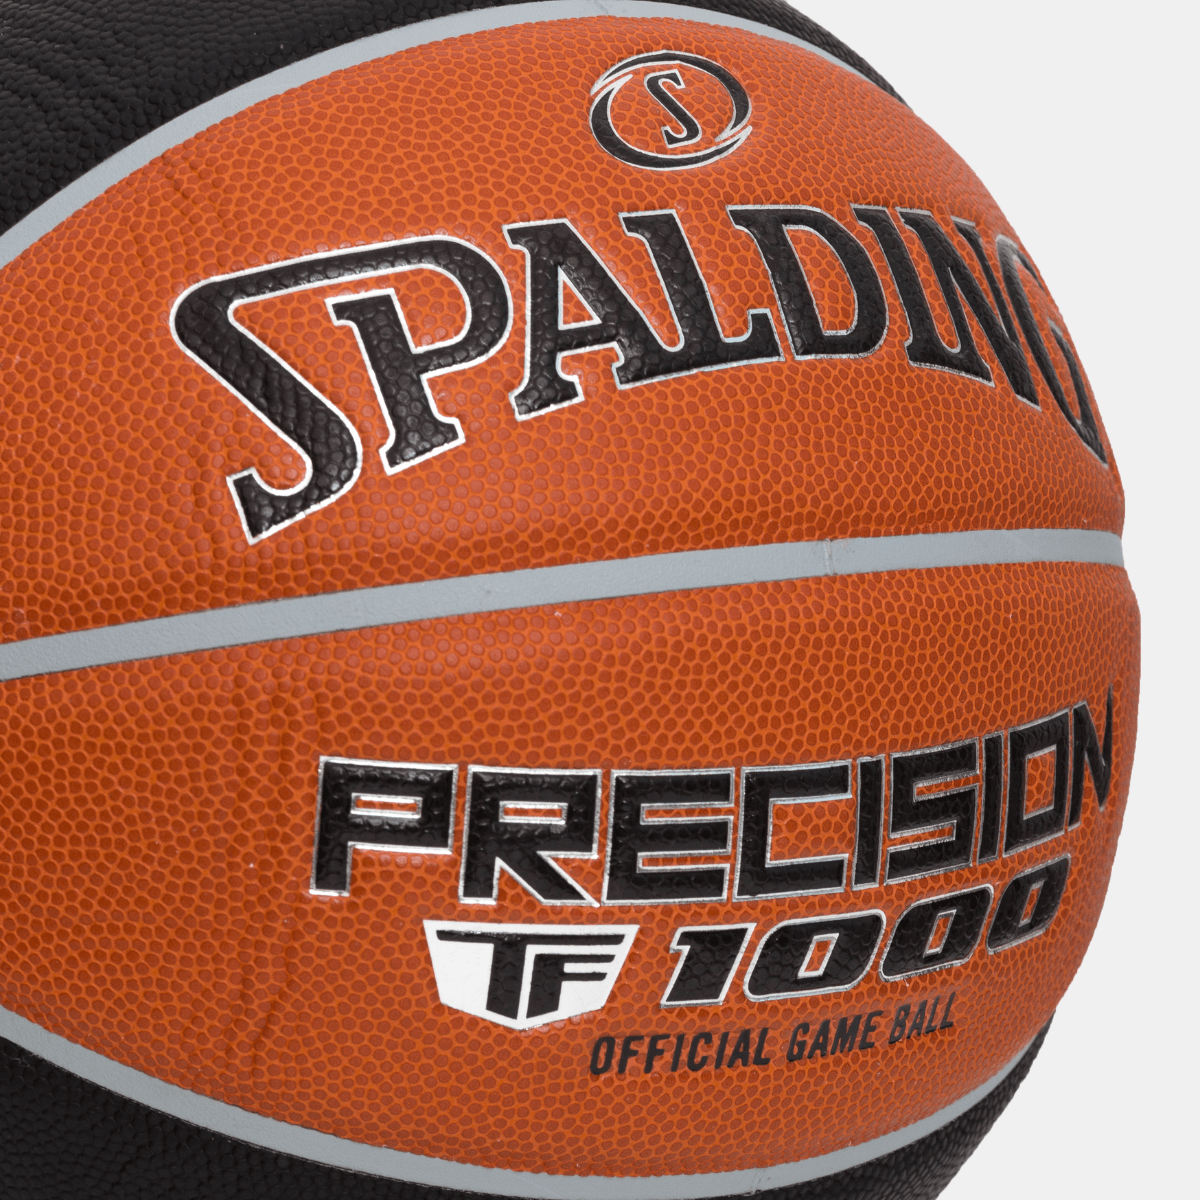 Bola De Basquete - TF 1000 #7 Precision Spalding